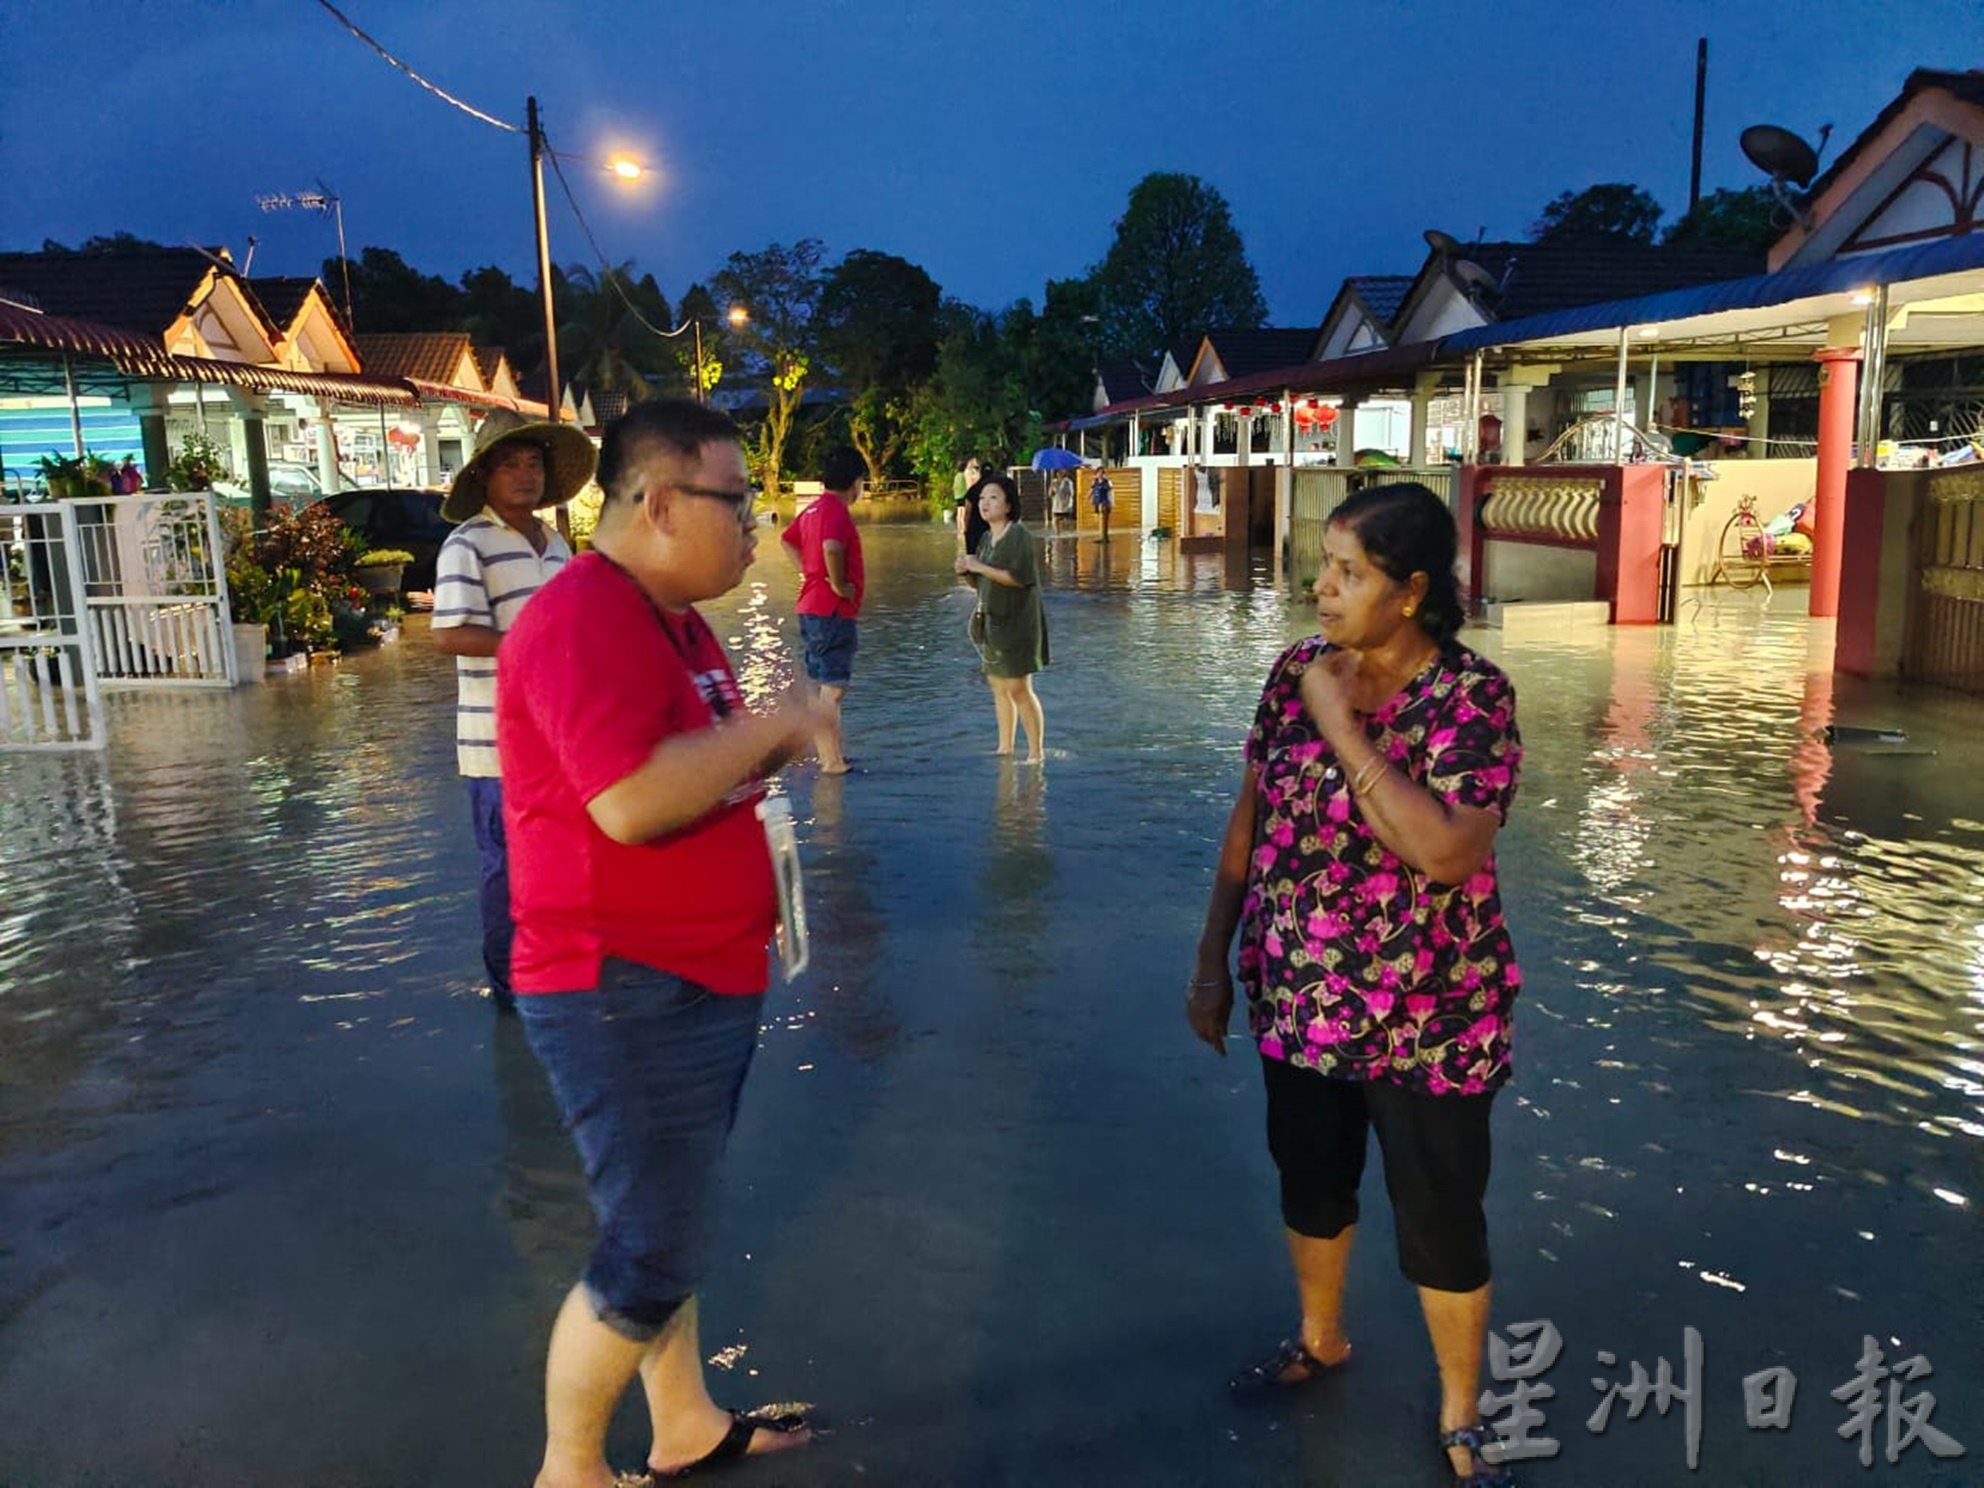 太平豪雨 多地水患 百户民宅受影响